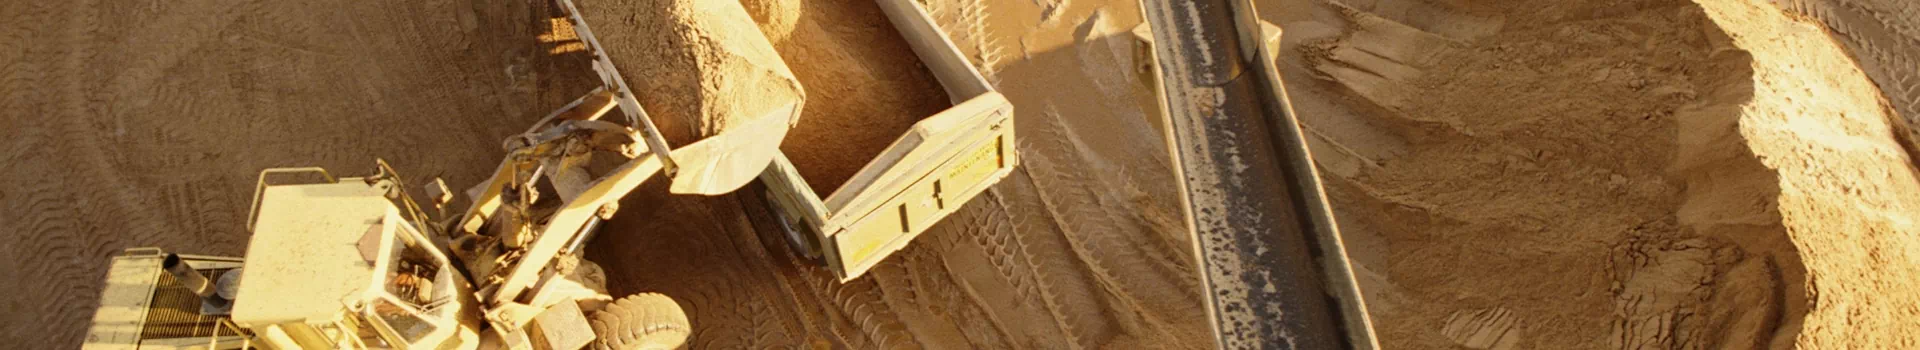 koparka wysypująca piach do przyczepy